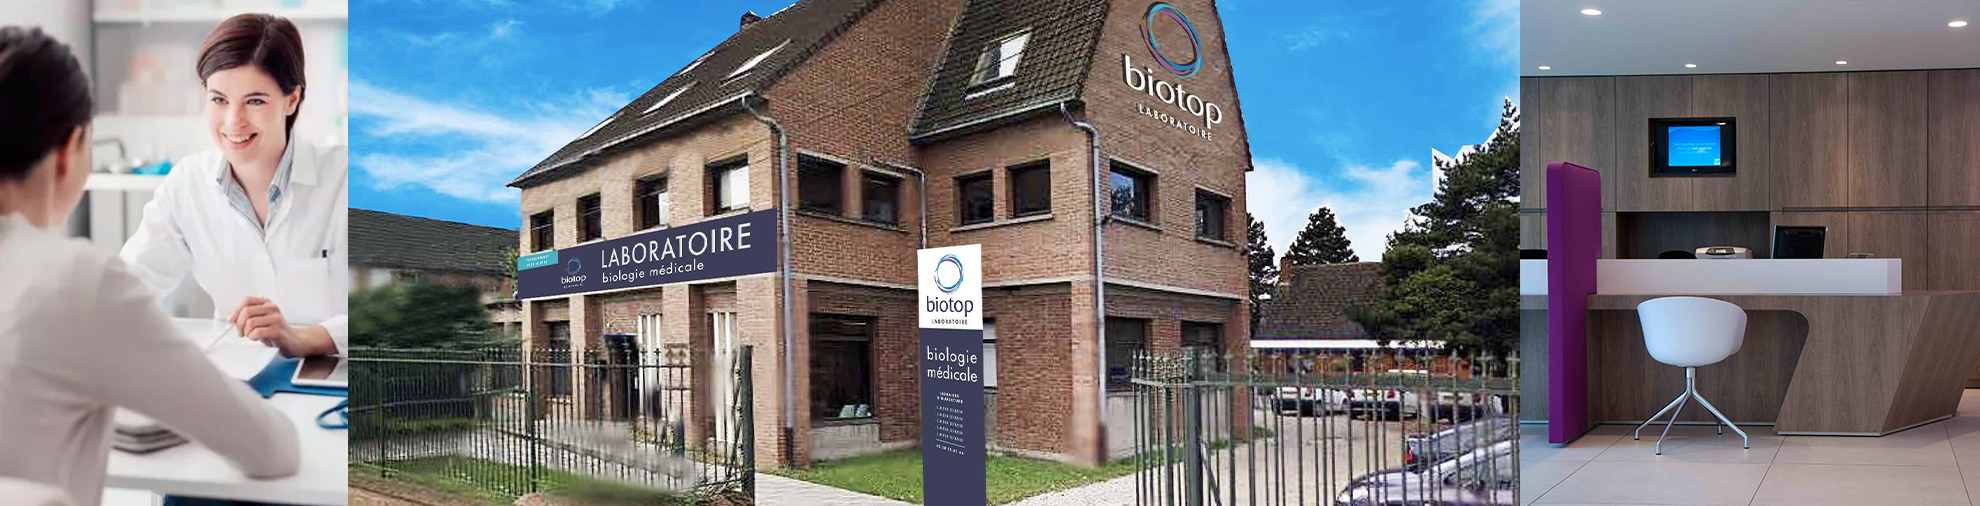 laboratoire d'analyses biotop Douai